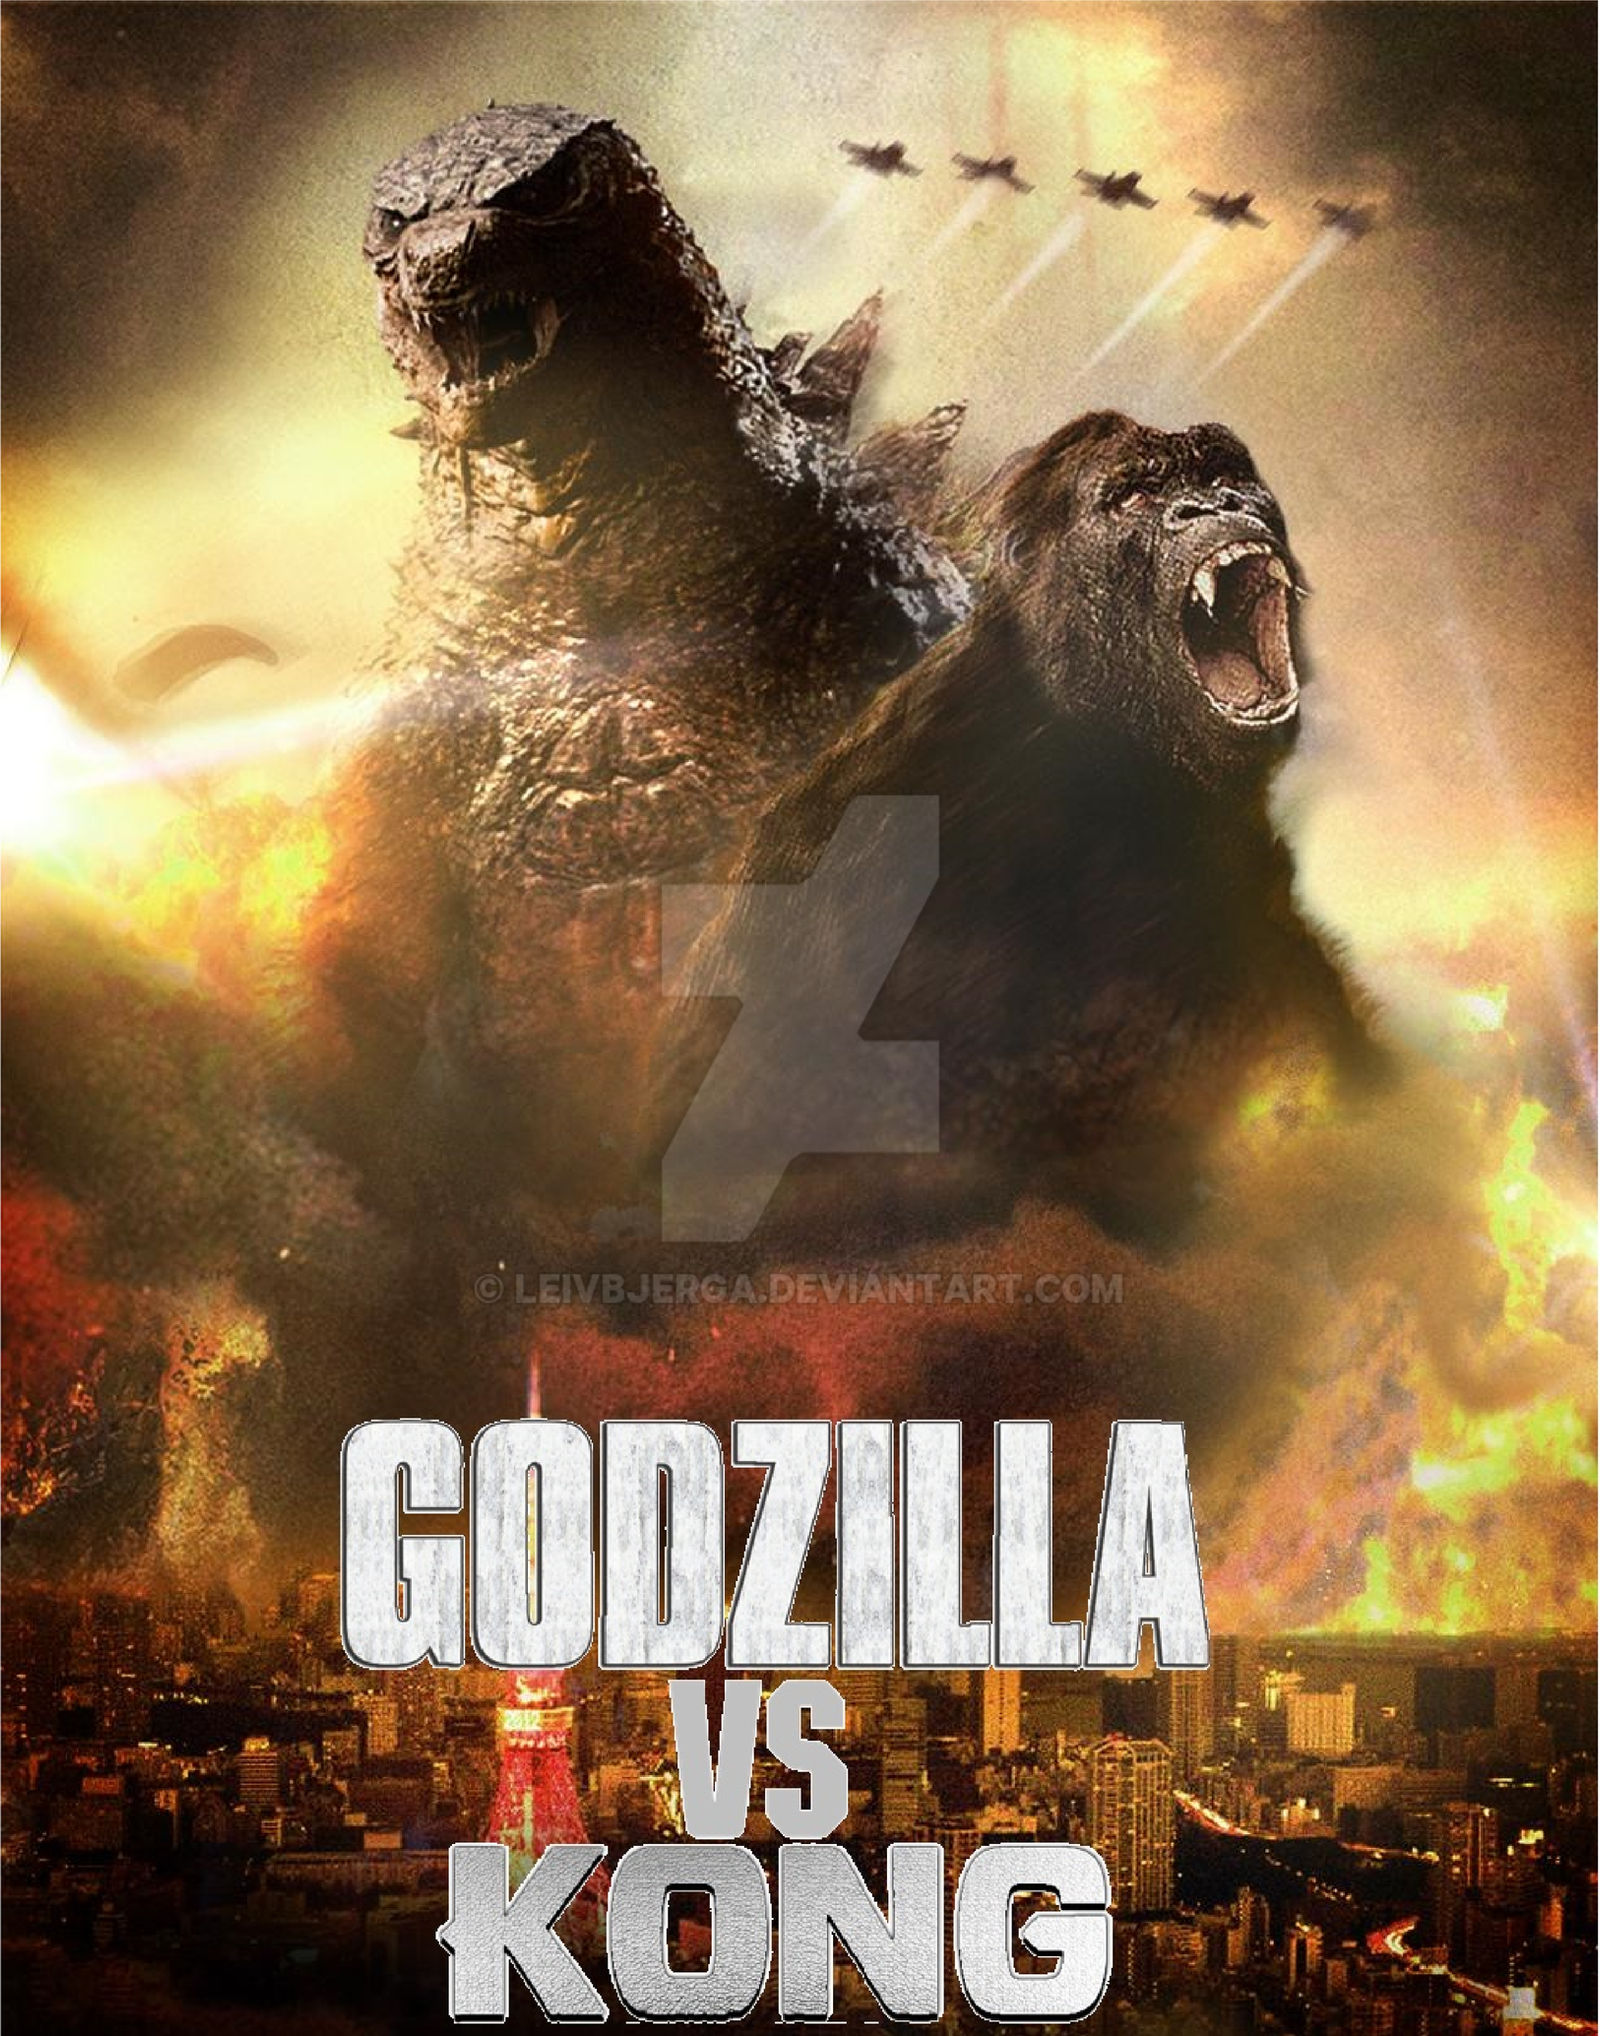 Poster Of New Godzilla Vs Kong Wallpapers